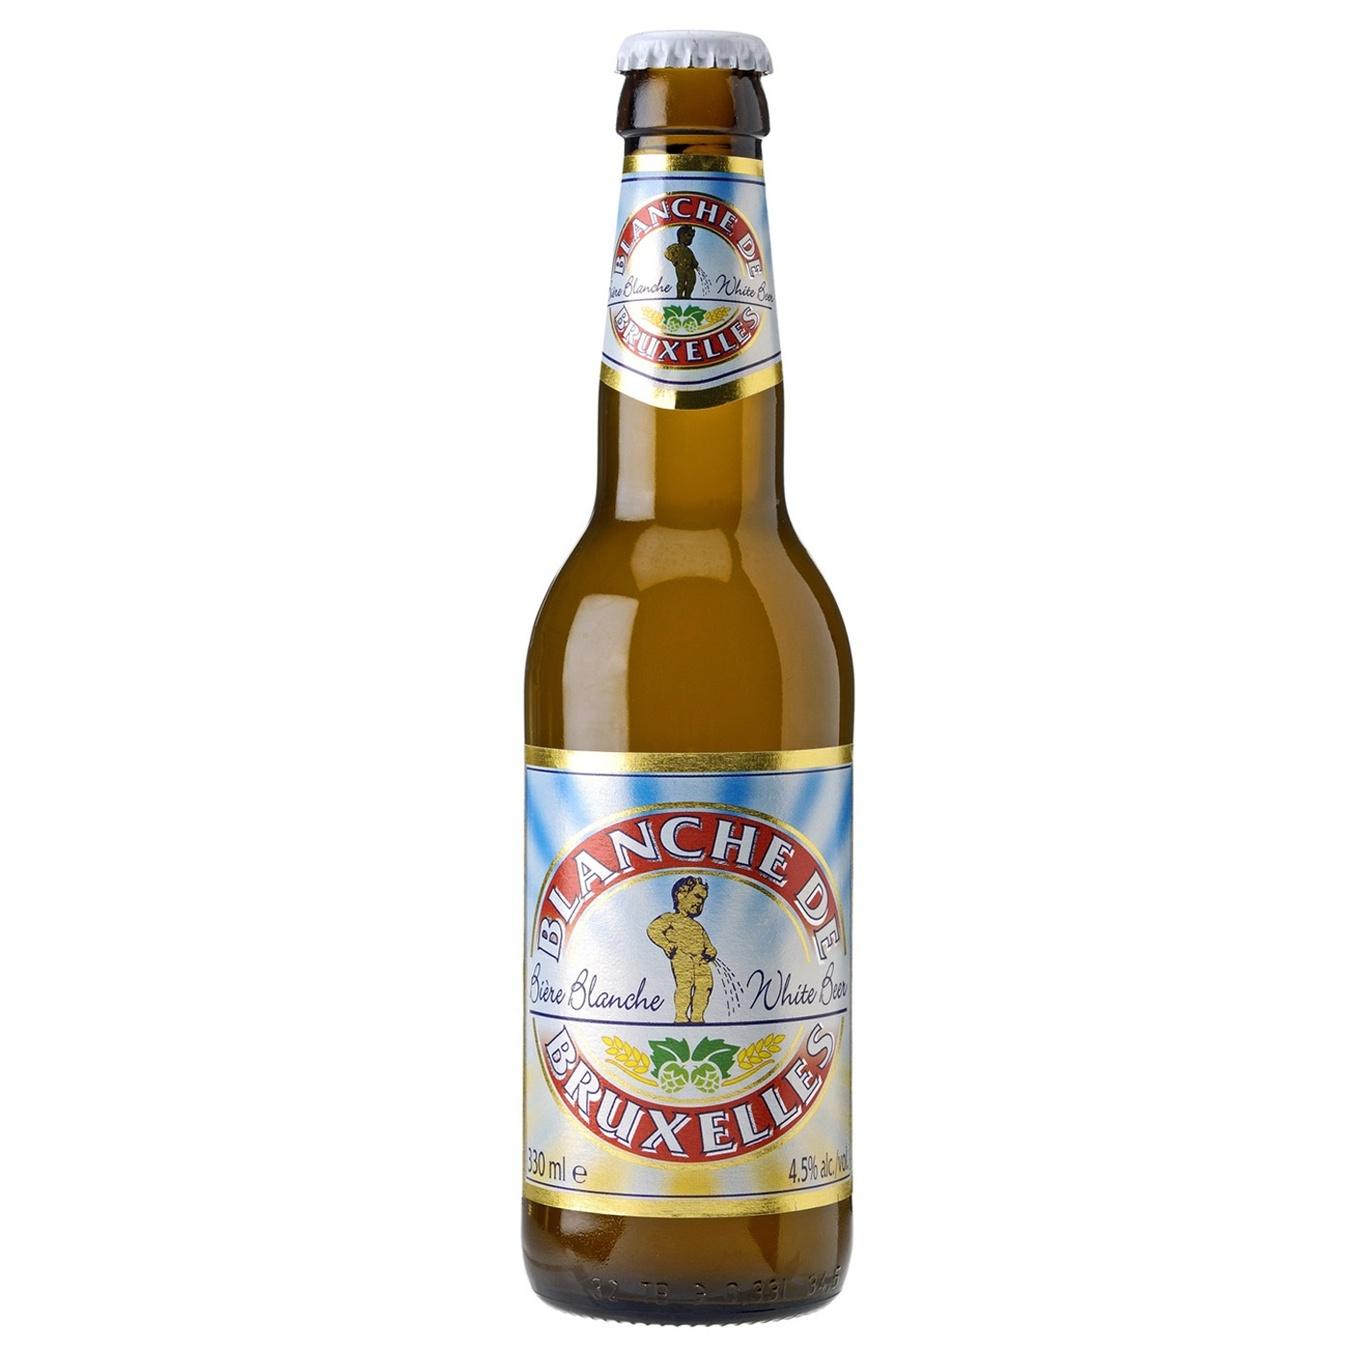 Light beer Blanshe de Bruxelles Witbier unfiltered 4.5% 0.33l glass